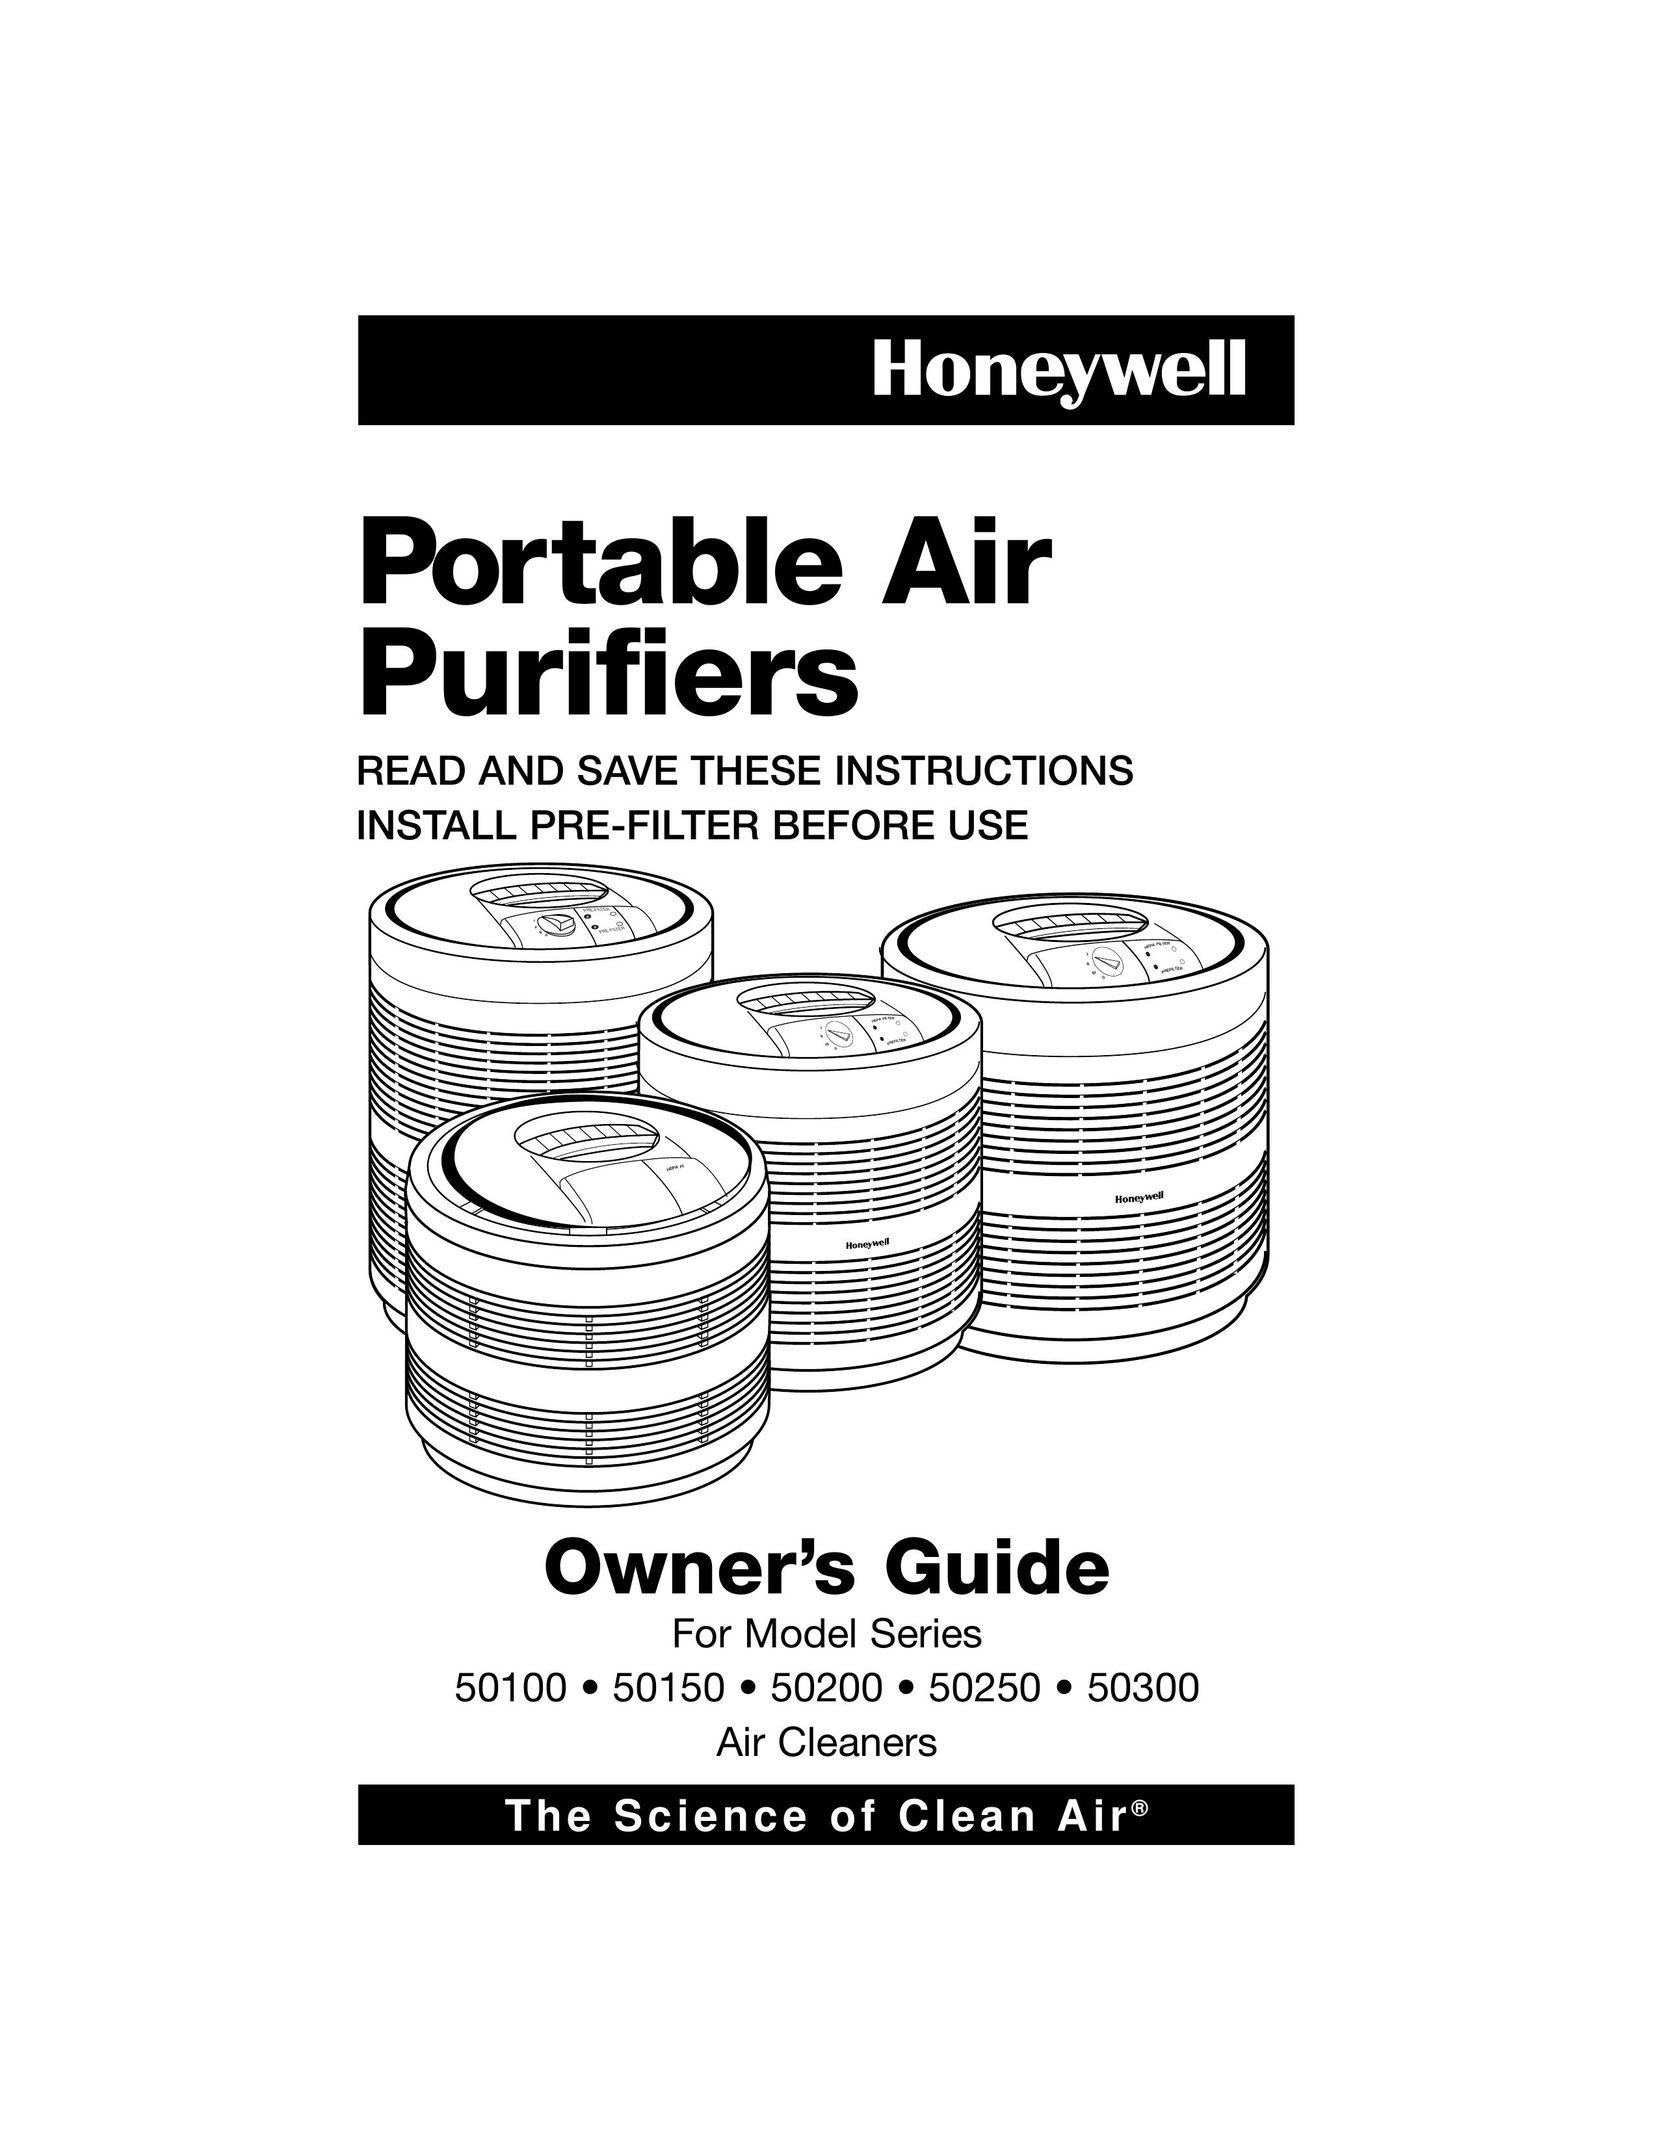 Filtera 50150 Air Cleaner User Manual